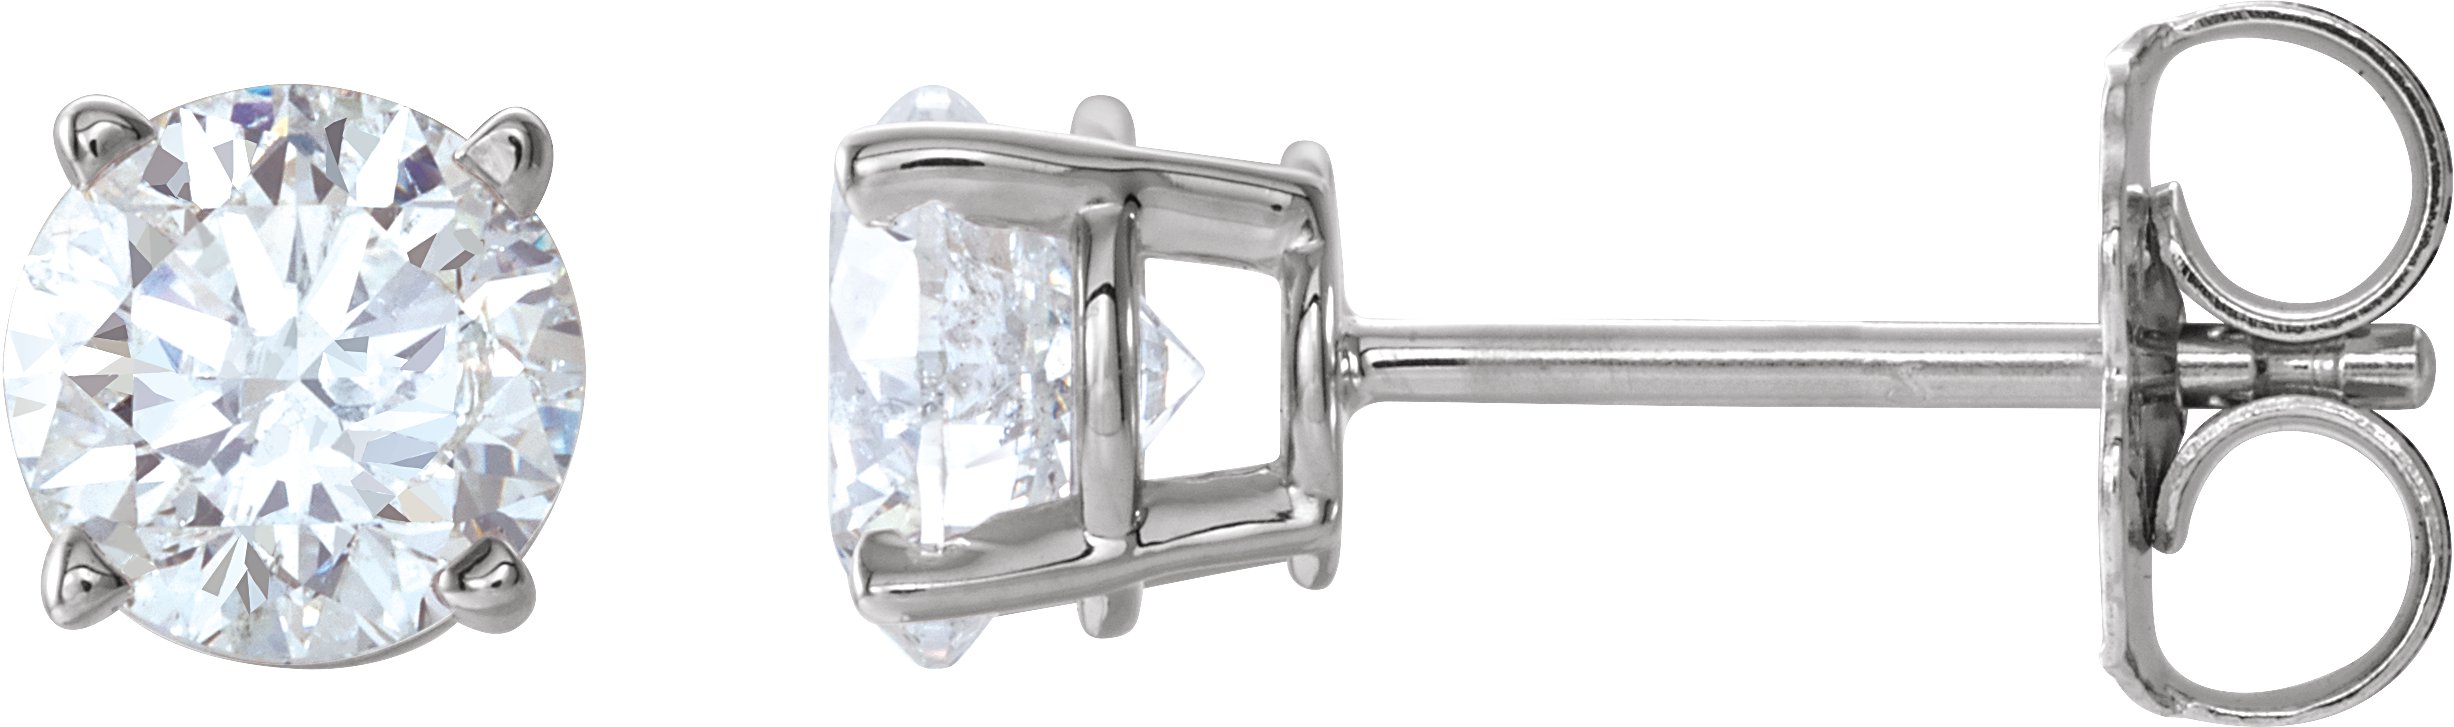 Gemstone or Diamond Stud Earrings or Mounting